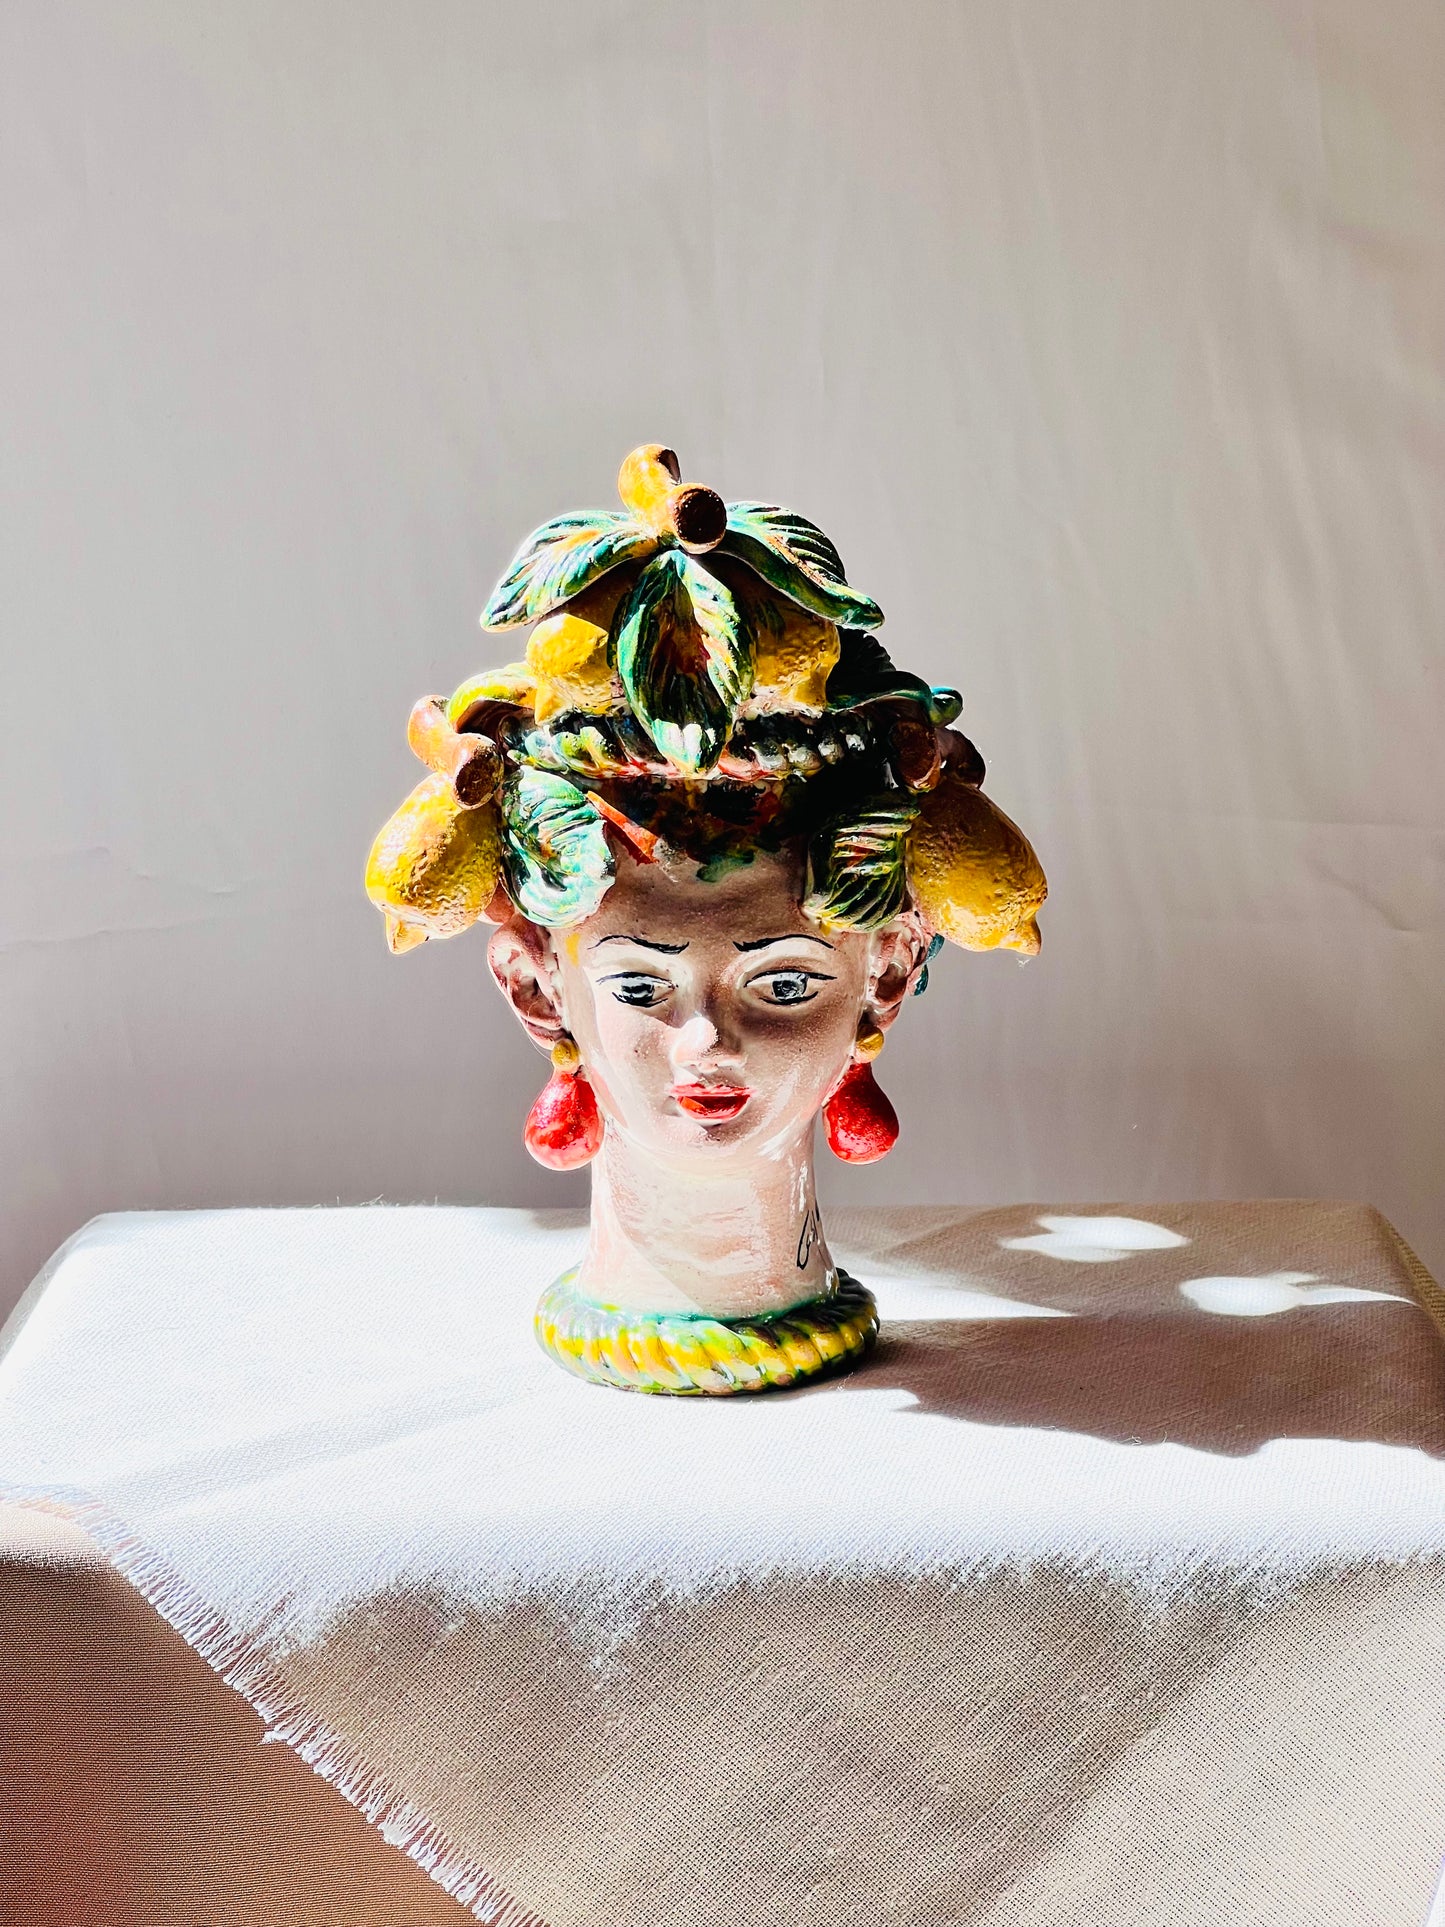 Cabeza recipiente de mujer decorada con limones 21cm